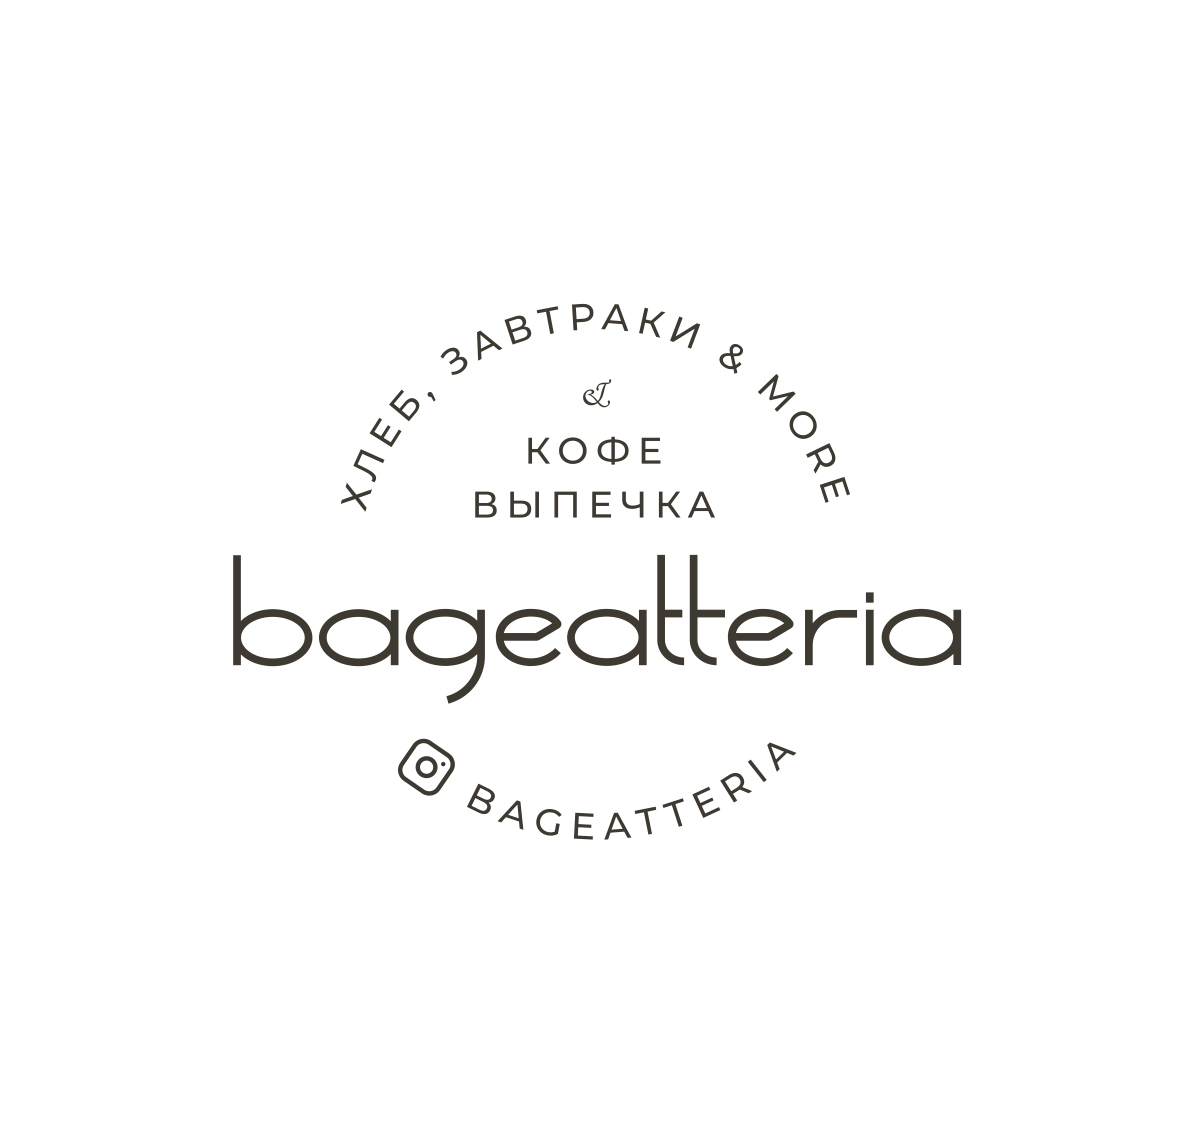 Bageatteria